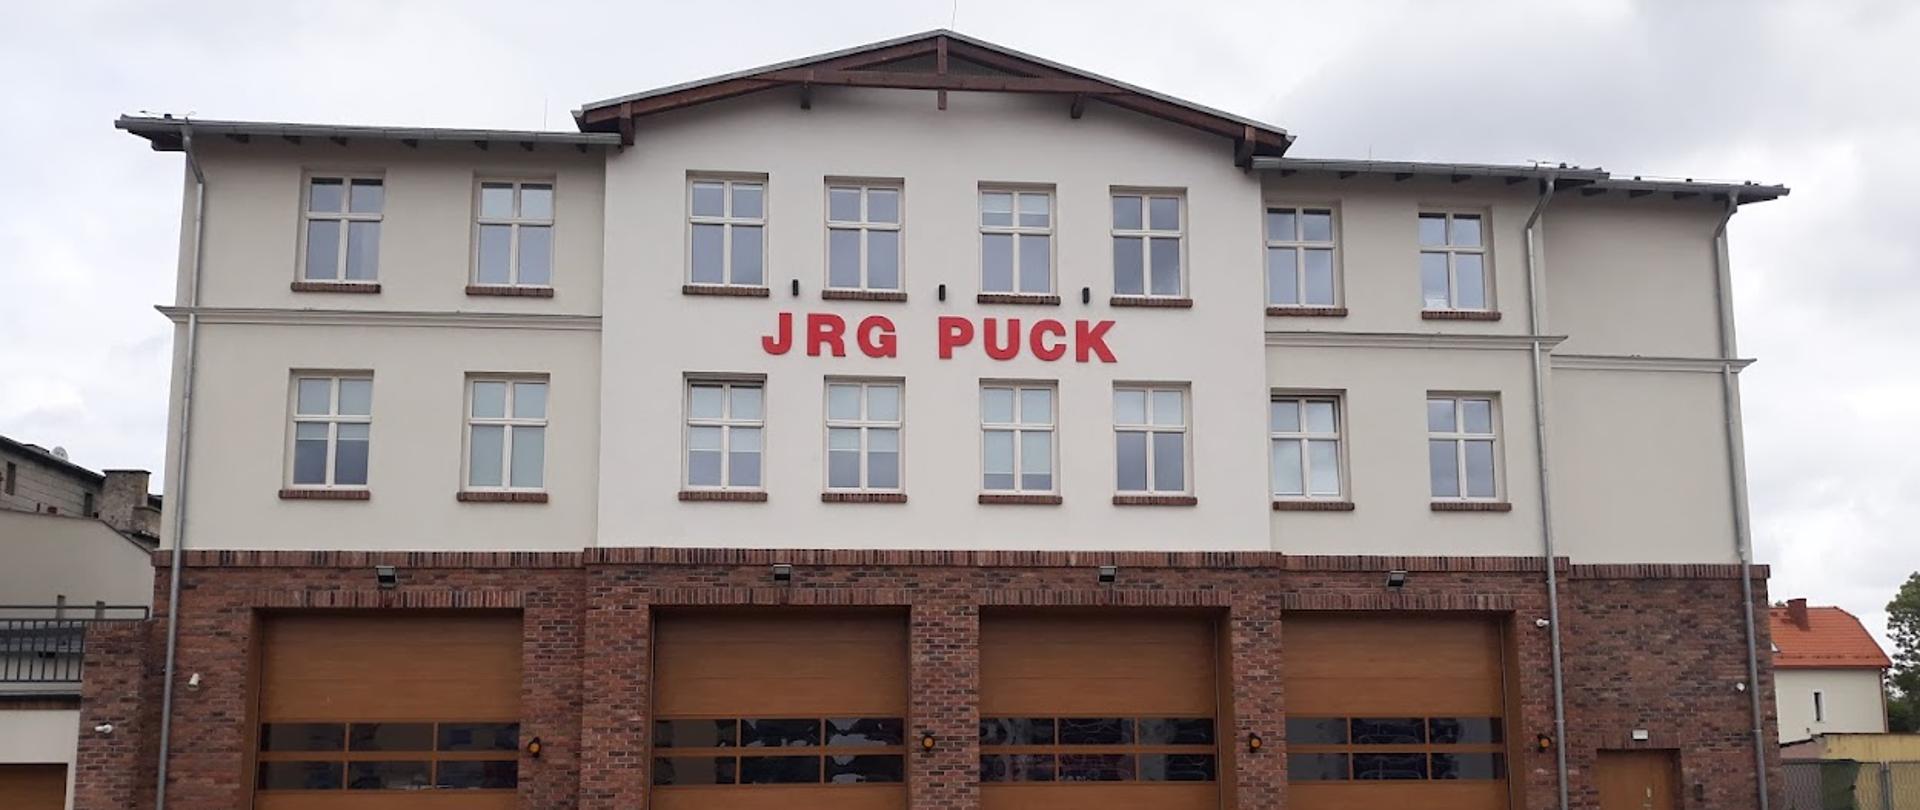 Zdjęcie przedstawia trzy kondygnacyjny budynek, na samym dole widać cztery brązowe bramy garażowe, powyżej dwa rzędy okien pomiędzy którymi znajduje się napis JRG Puck